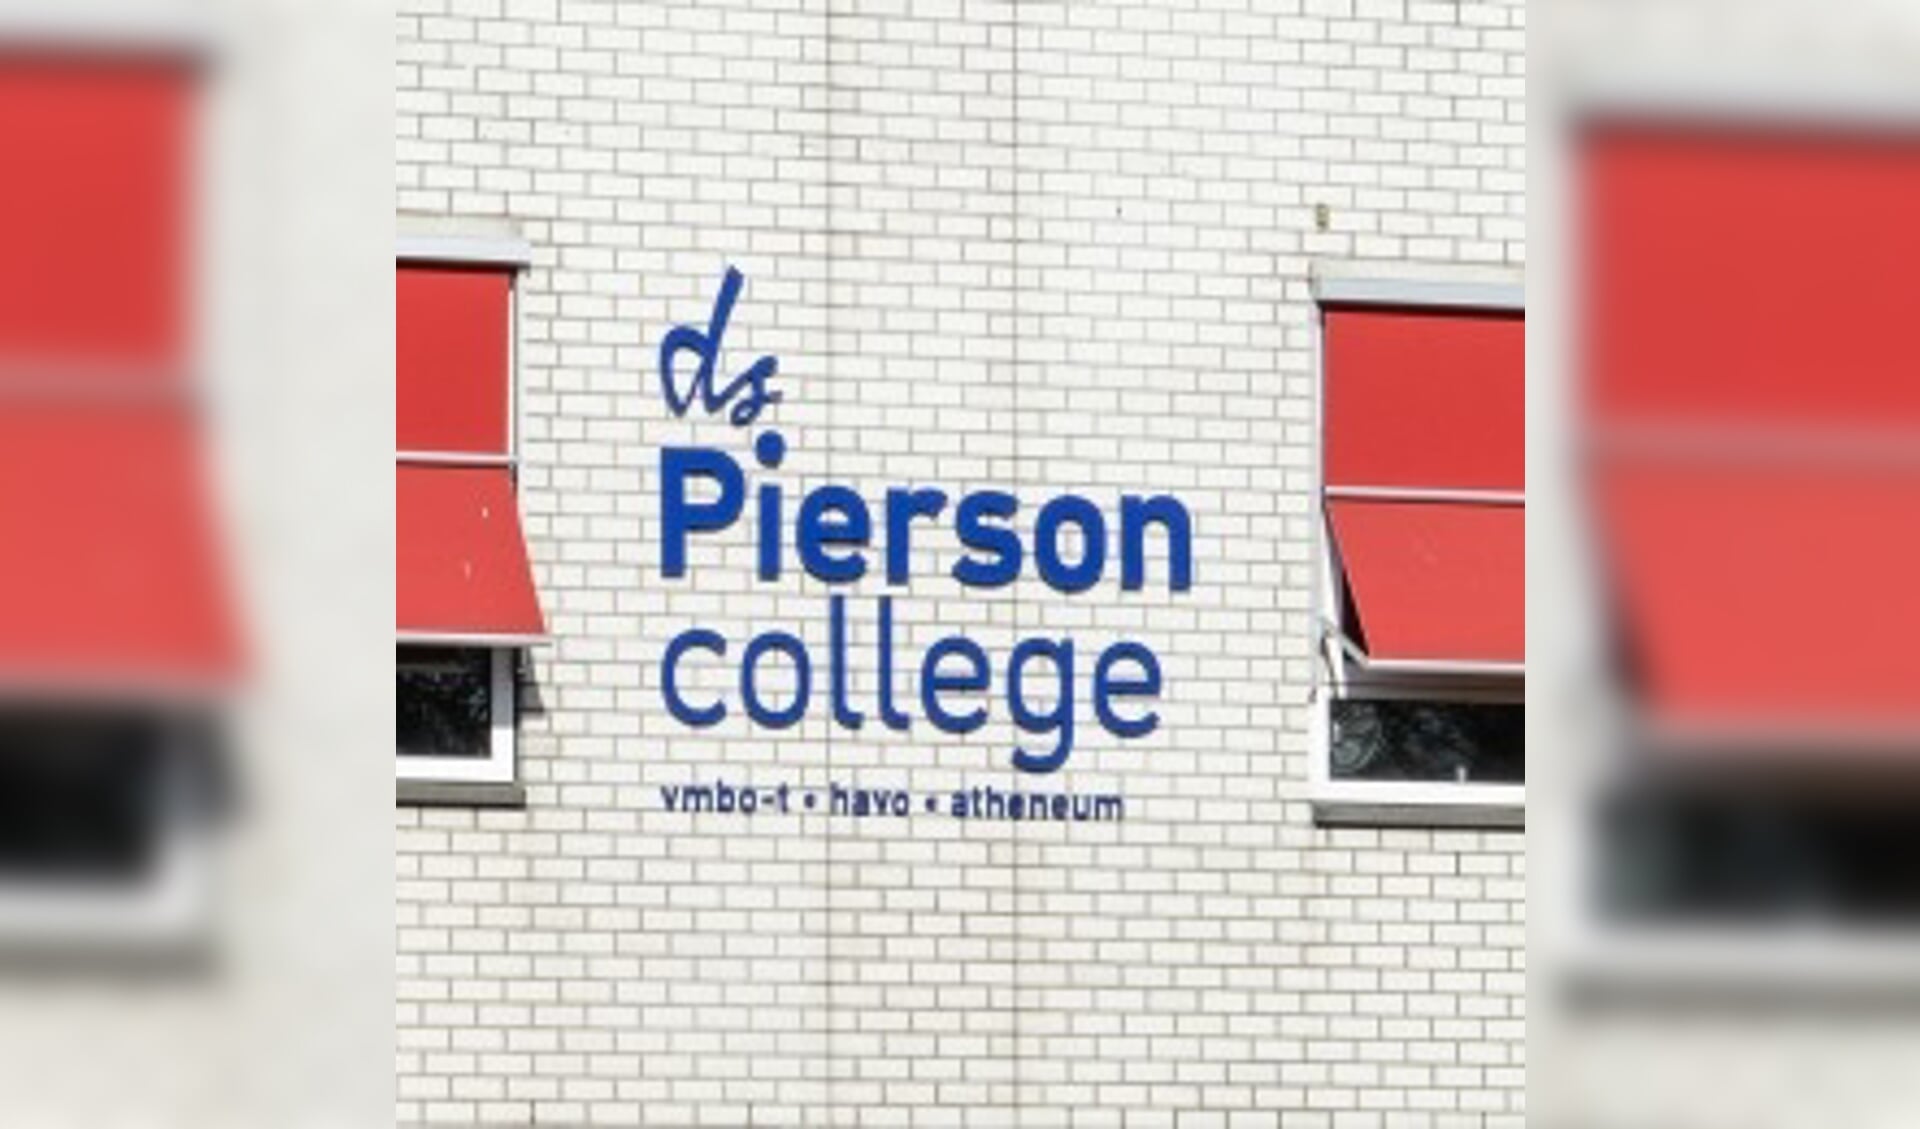 Drietal lezingen op het Ds. Pierson College in Den Bosch in de 'Maand van de Geschiedenis'.